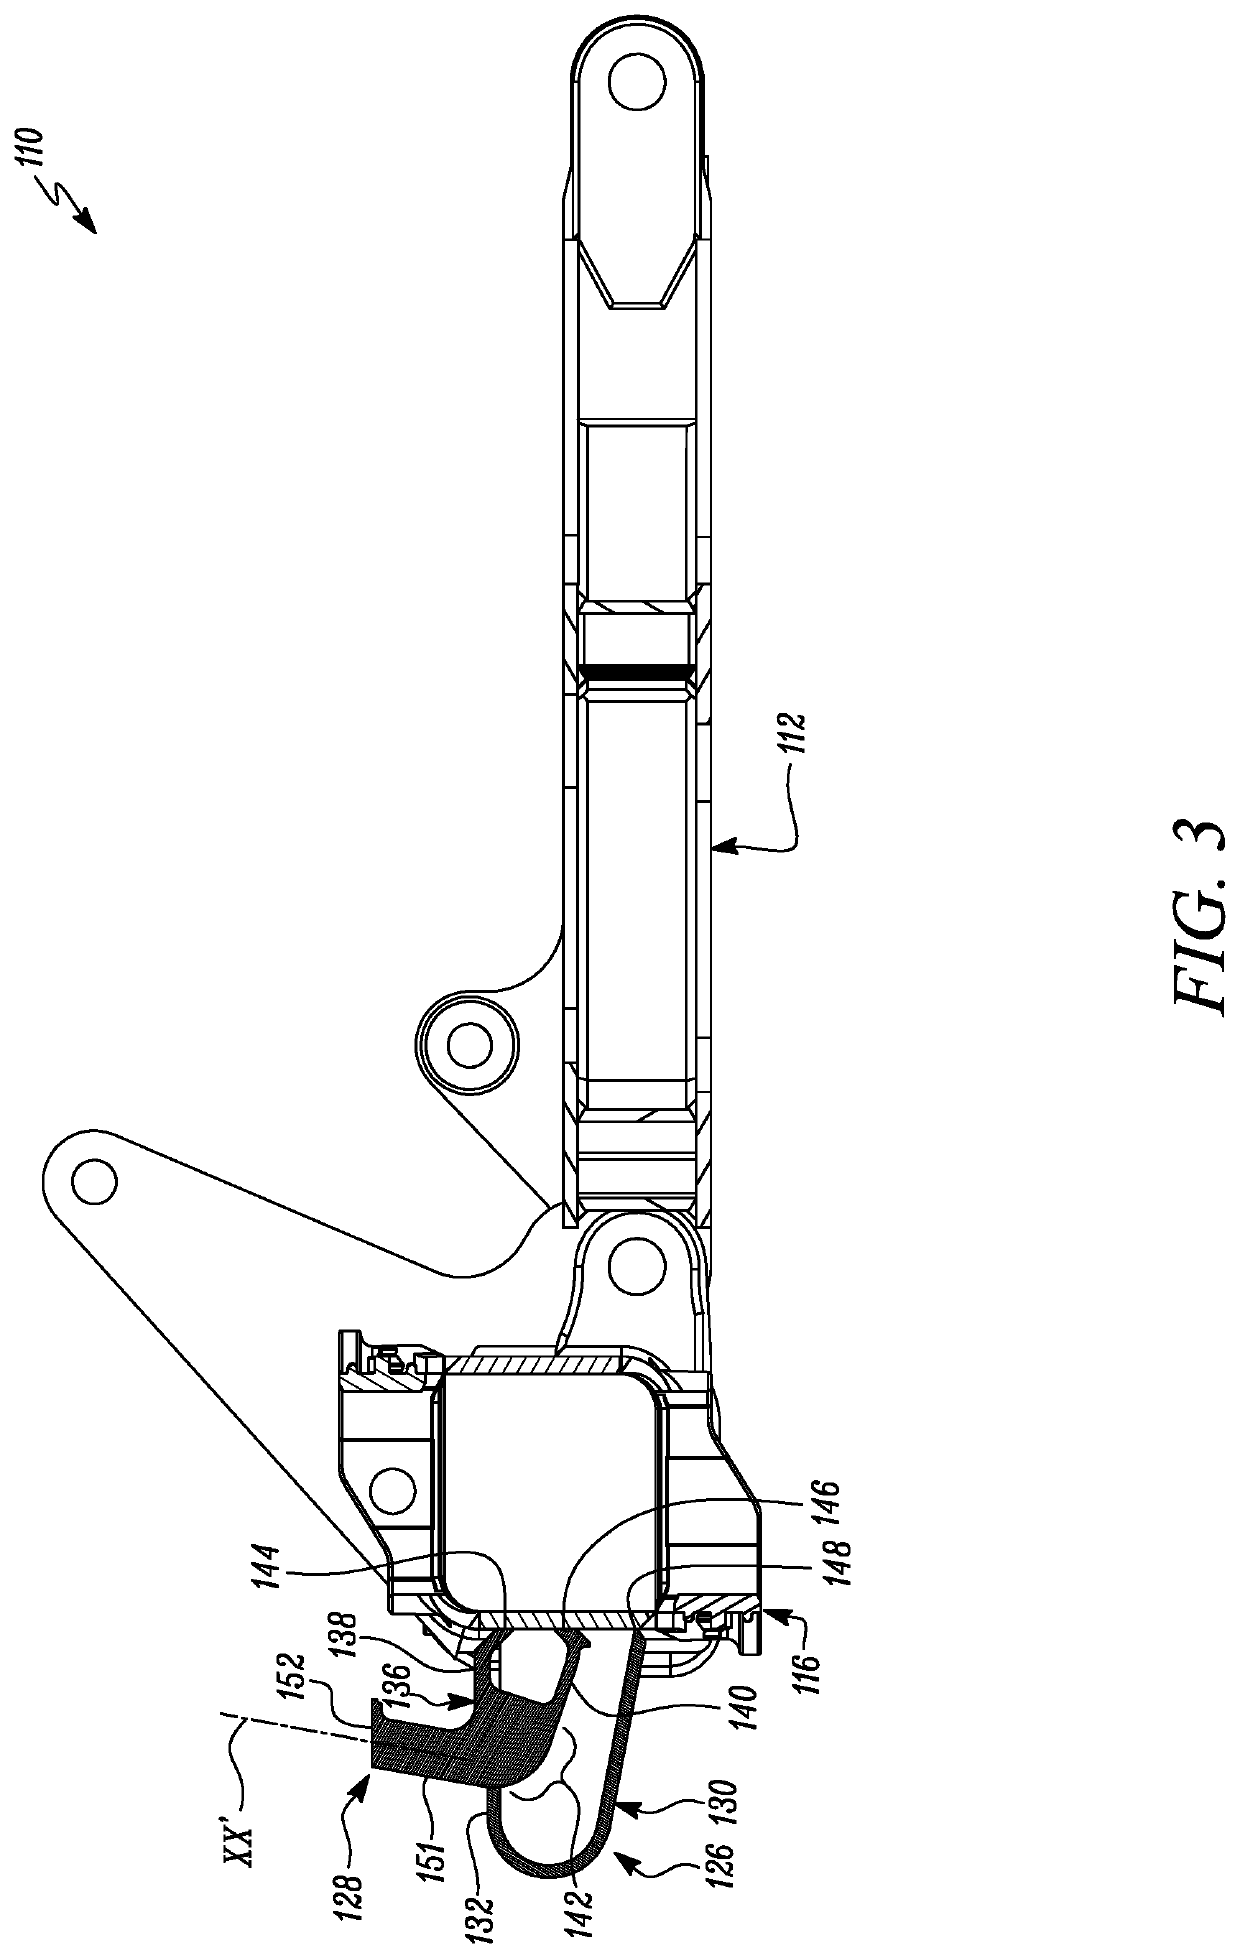 Retrieval arrangement for a ripper of a machine